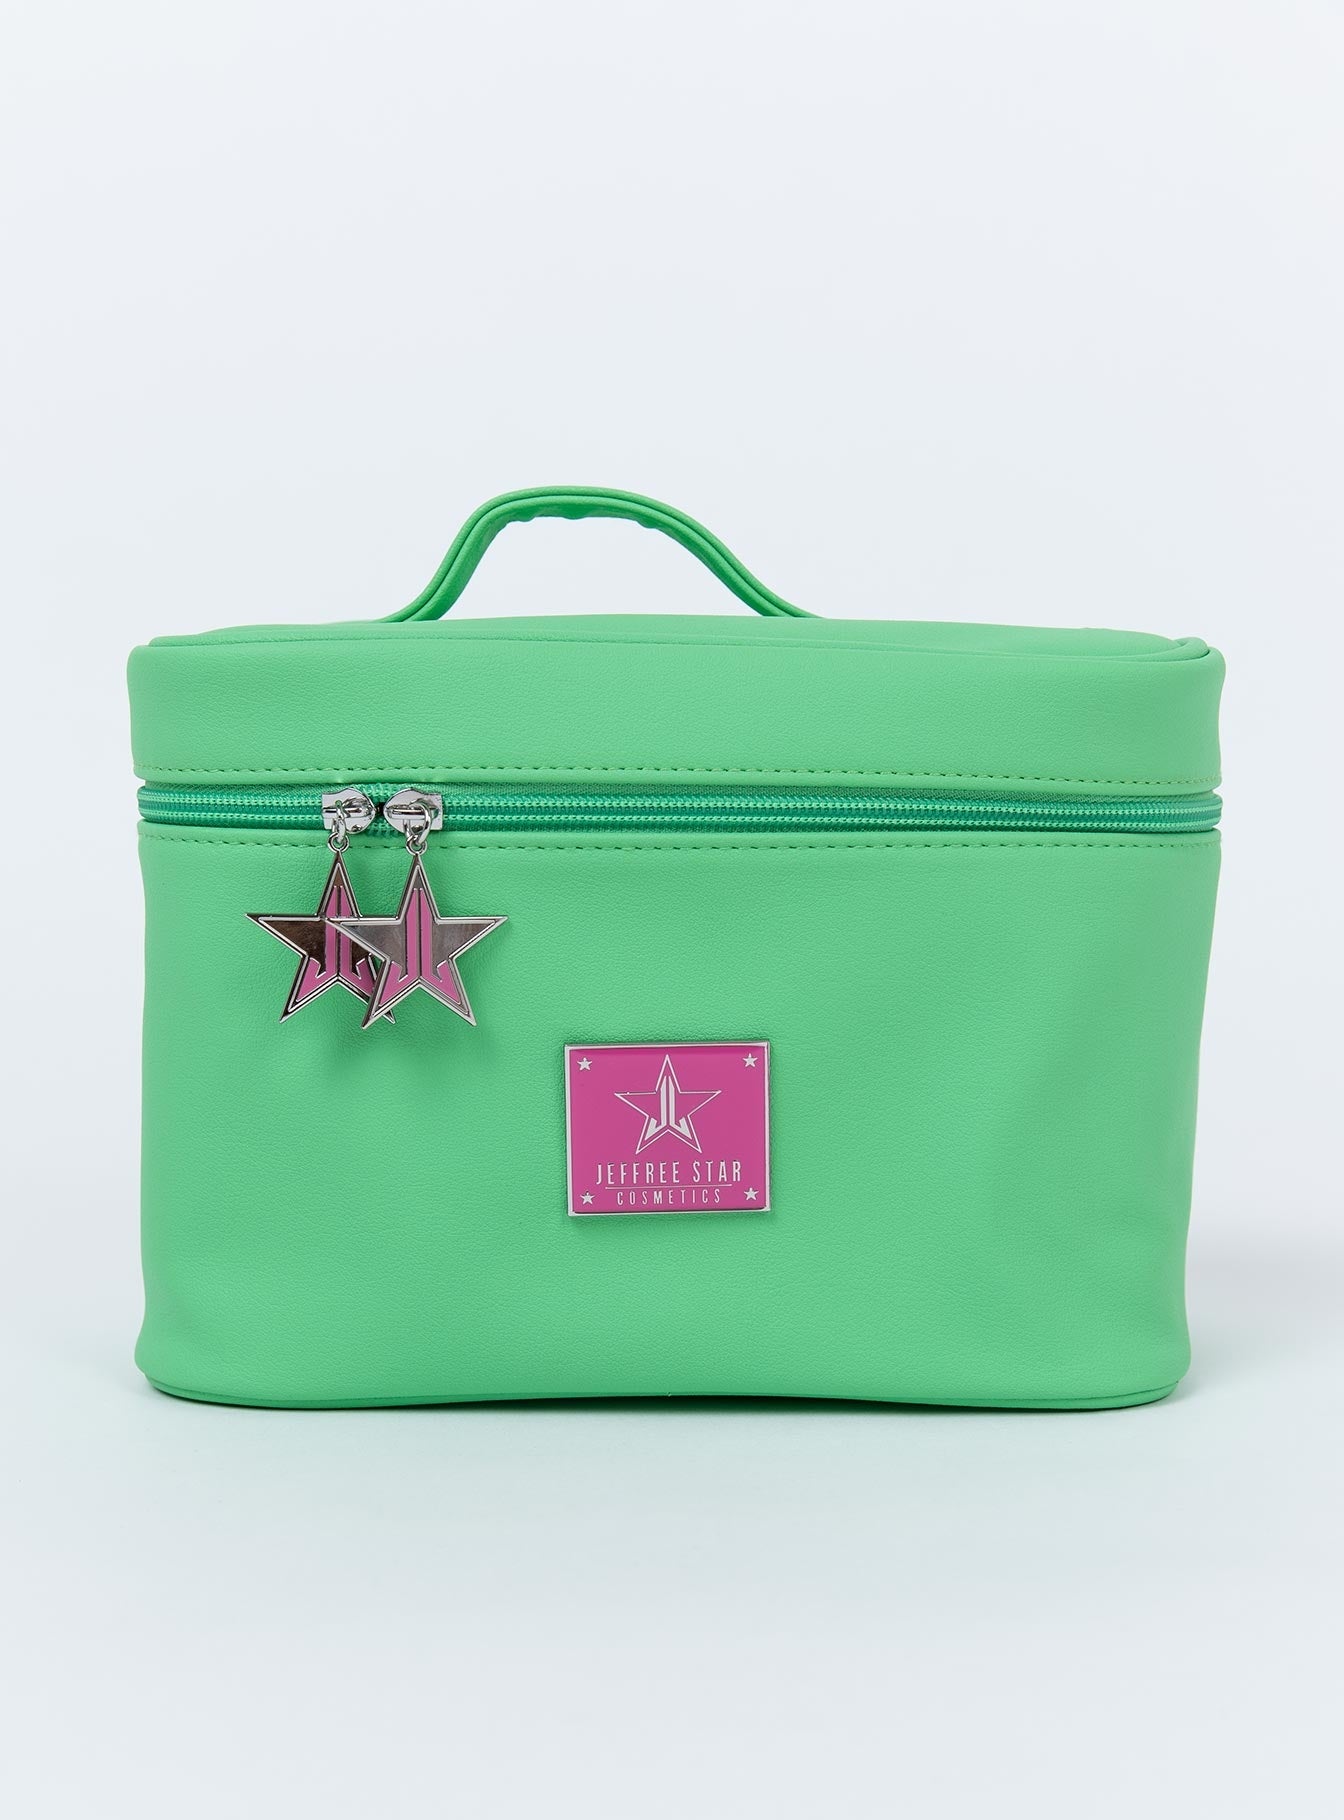 Jeffree Star Cosmetics Green Travel Makeup Bag – Princess Polly AUS